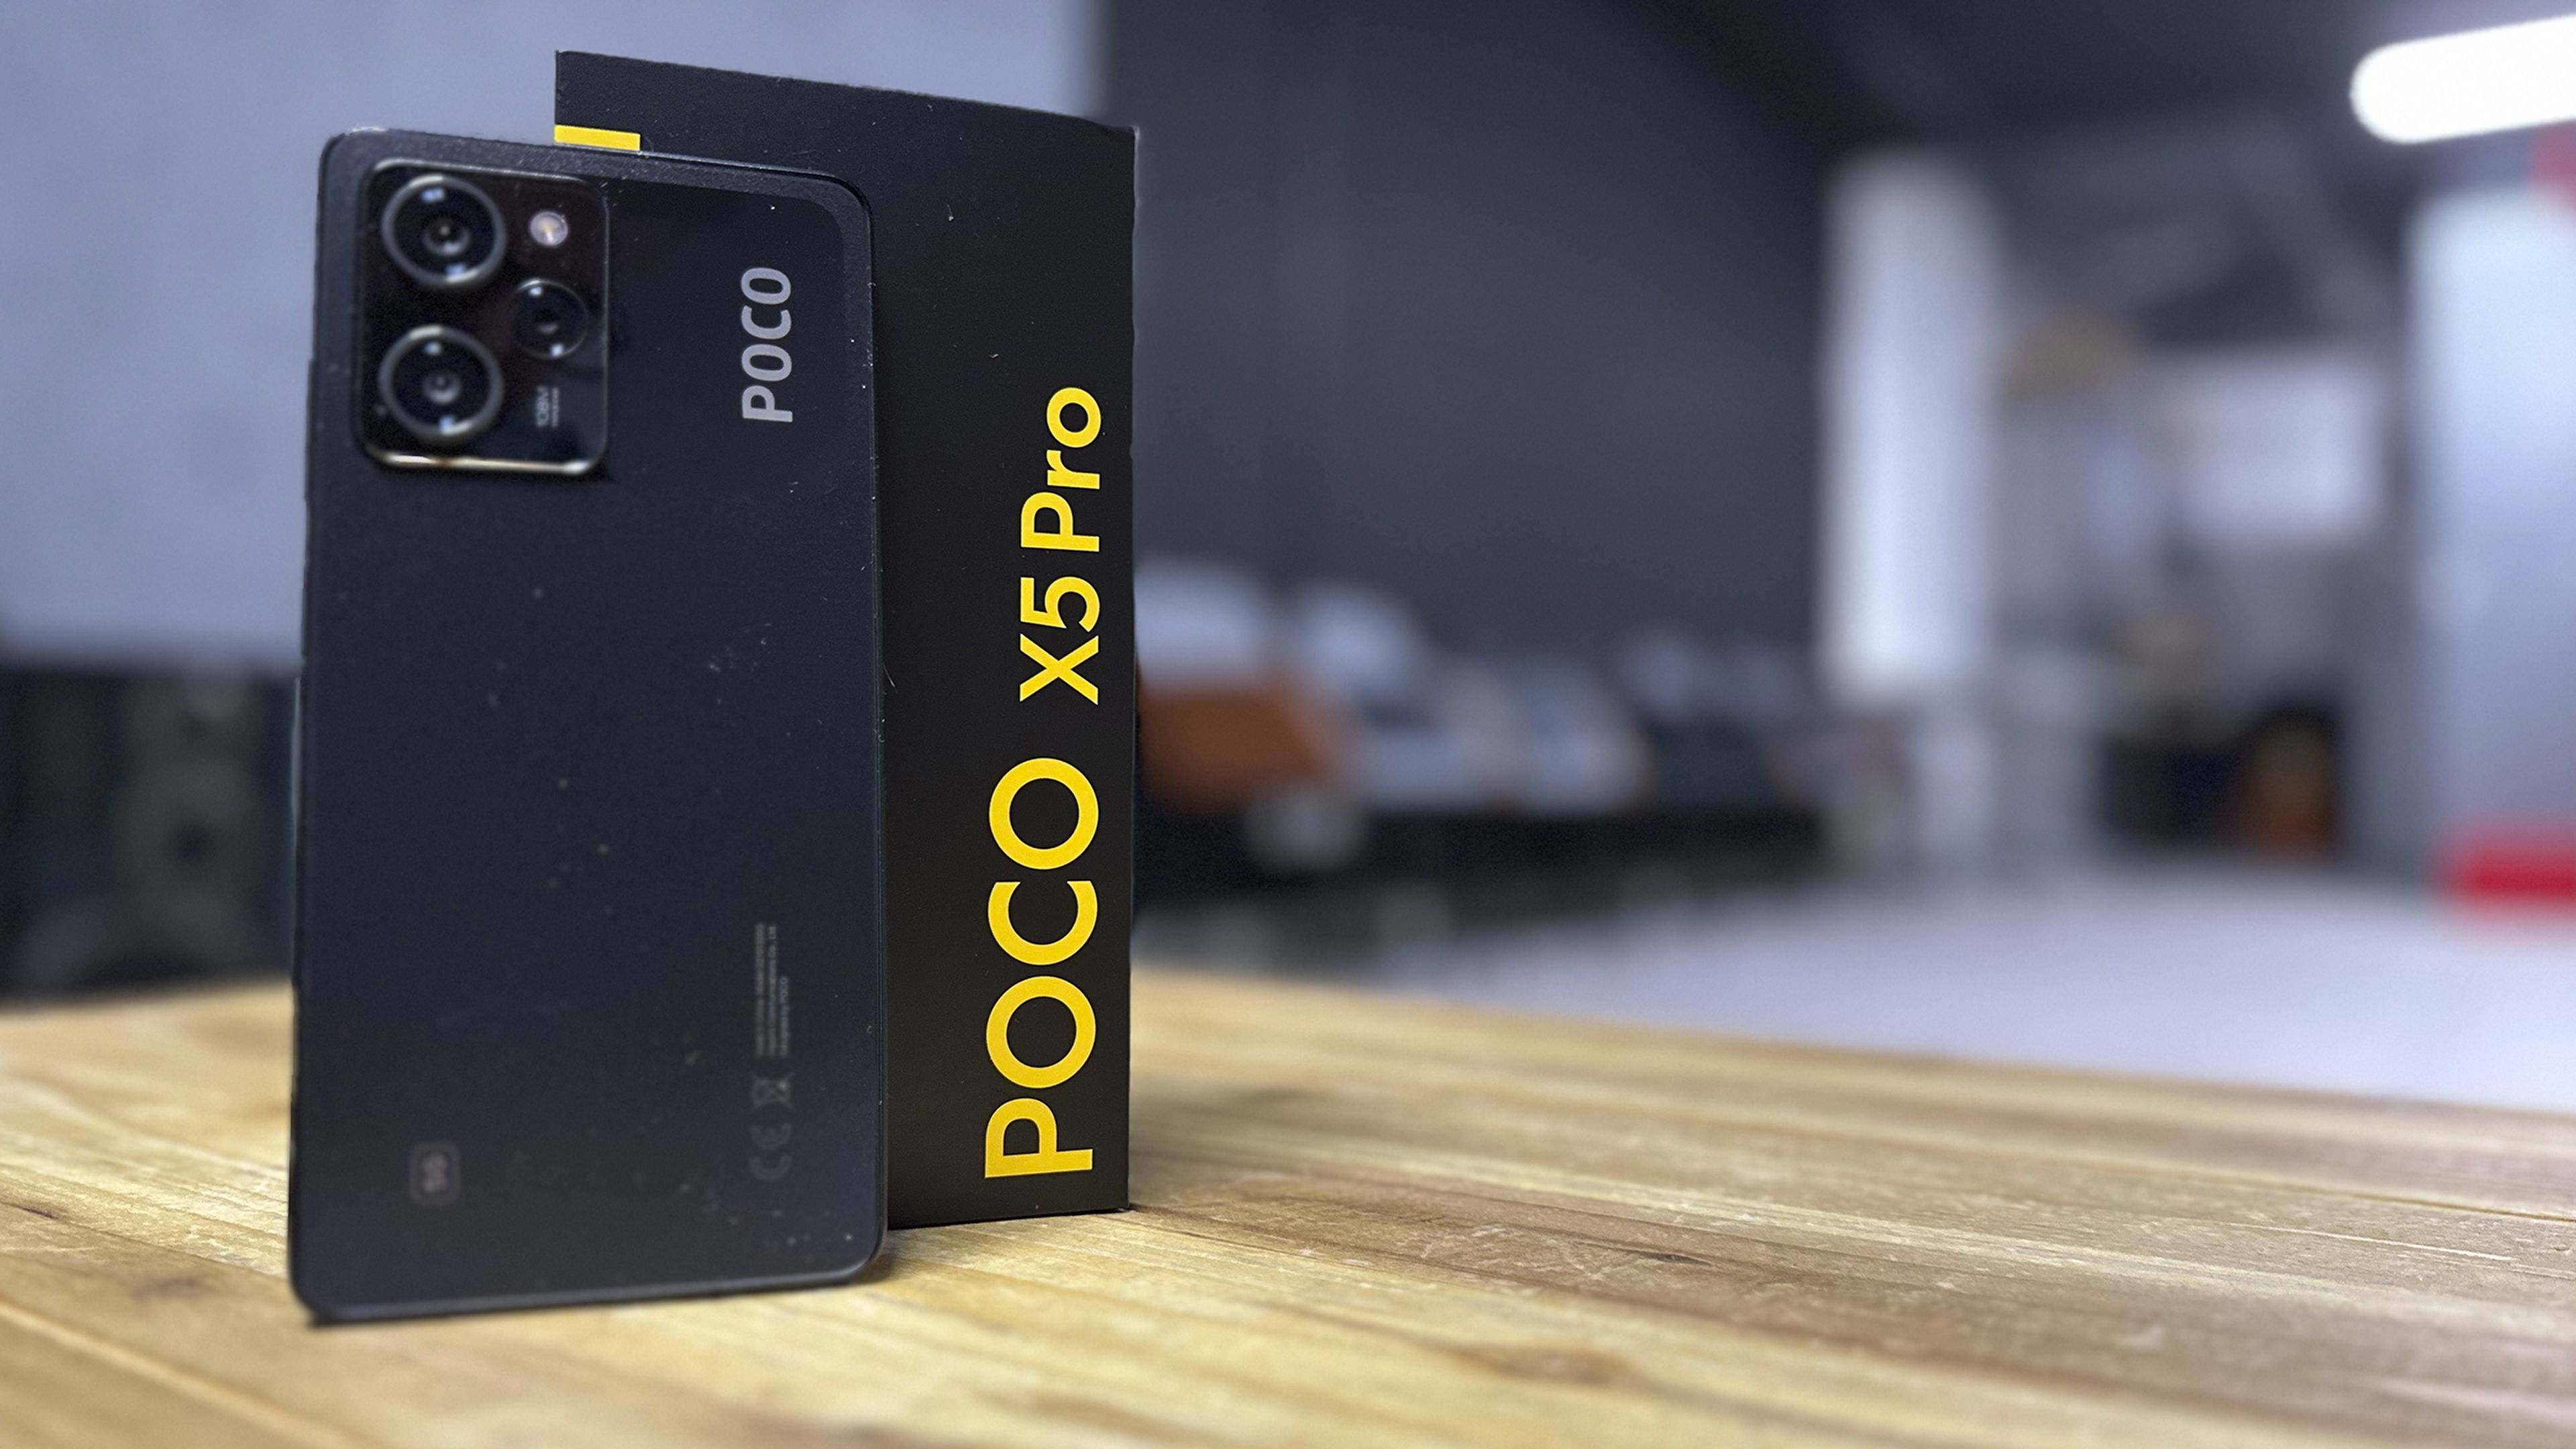 Liquidación en uno de los móviles baratos más deseados: el POCO X5 Pro, a  precio de derribo